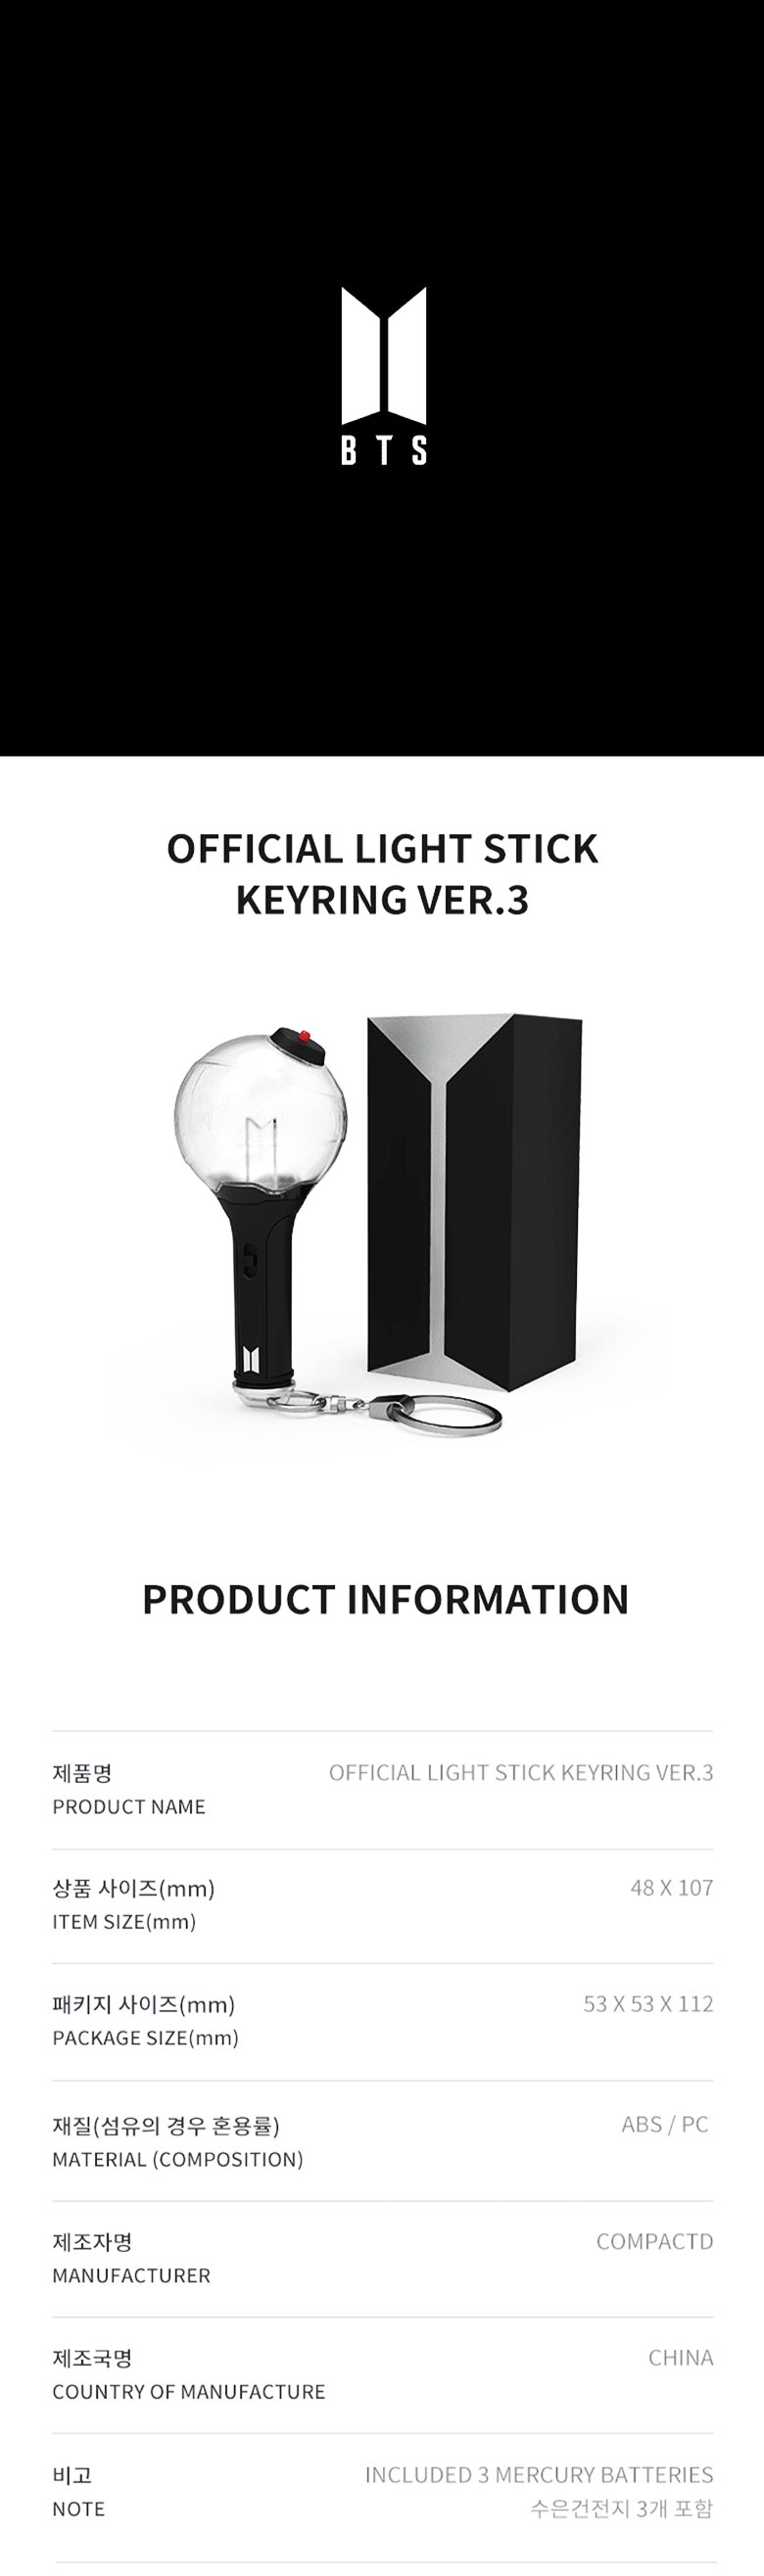 BTS Official Lightstick SE Ver Keyring